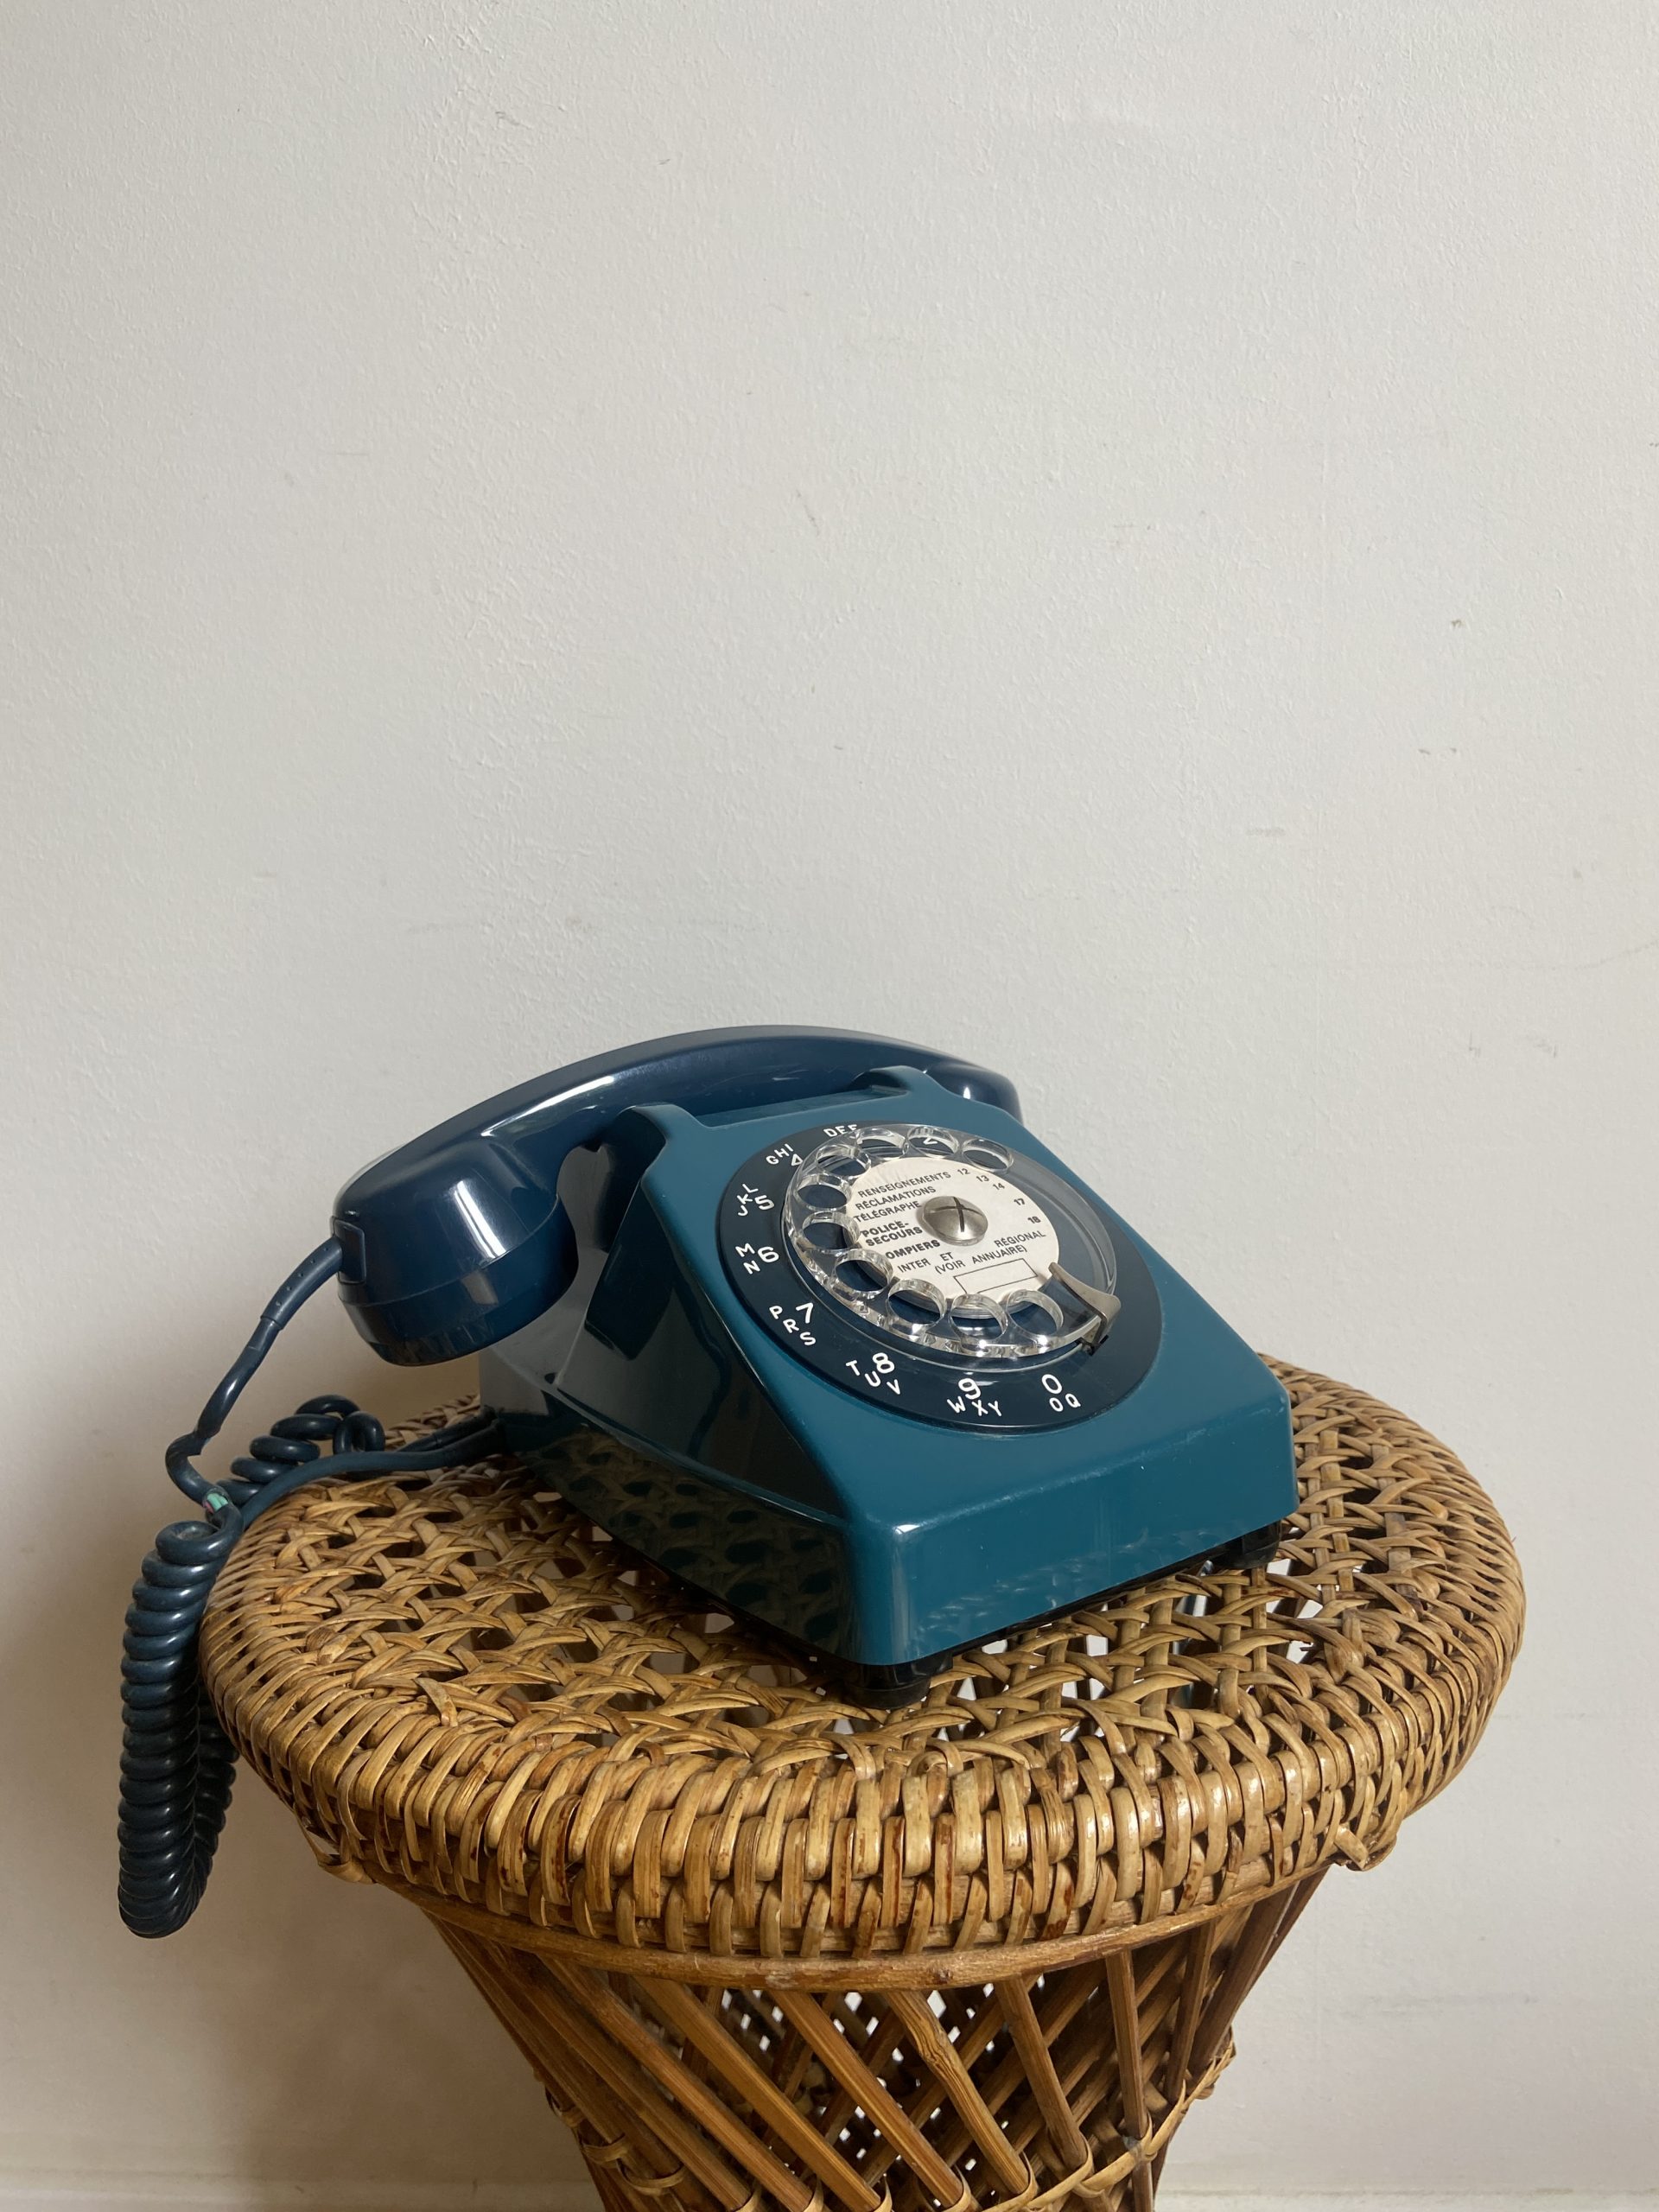 Téléphone à cadran Socotel S63 bleu paon 1979